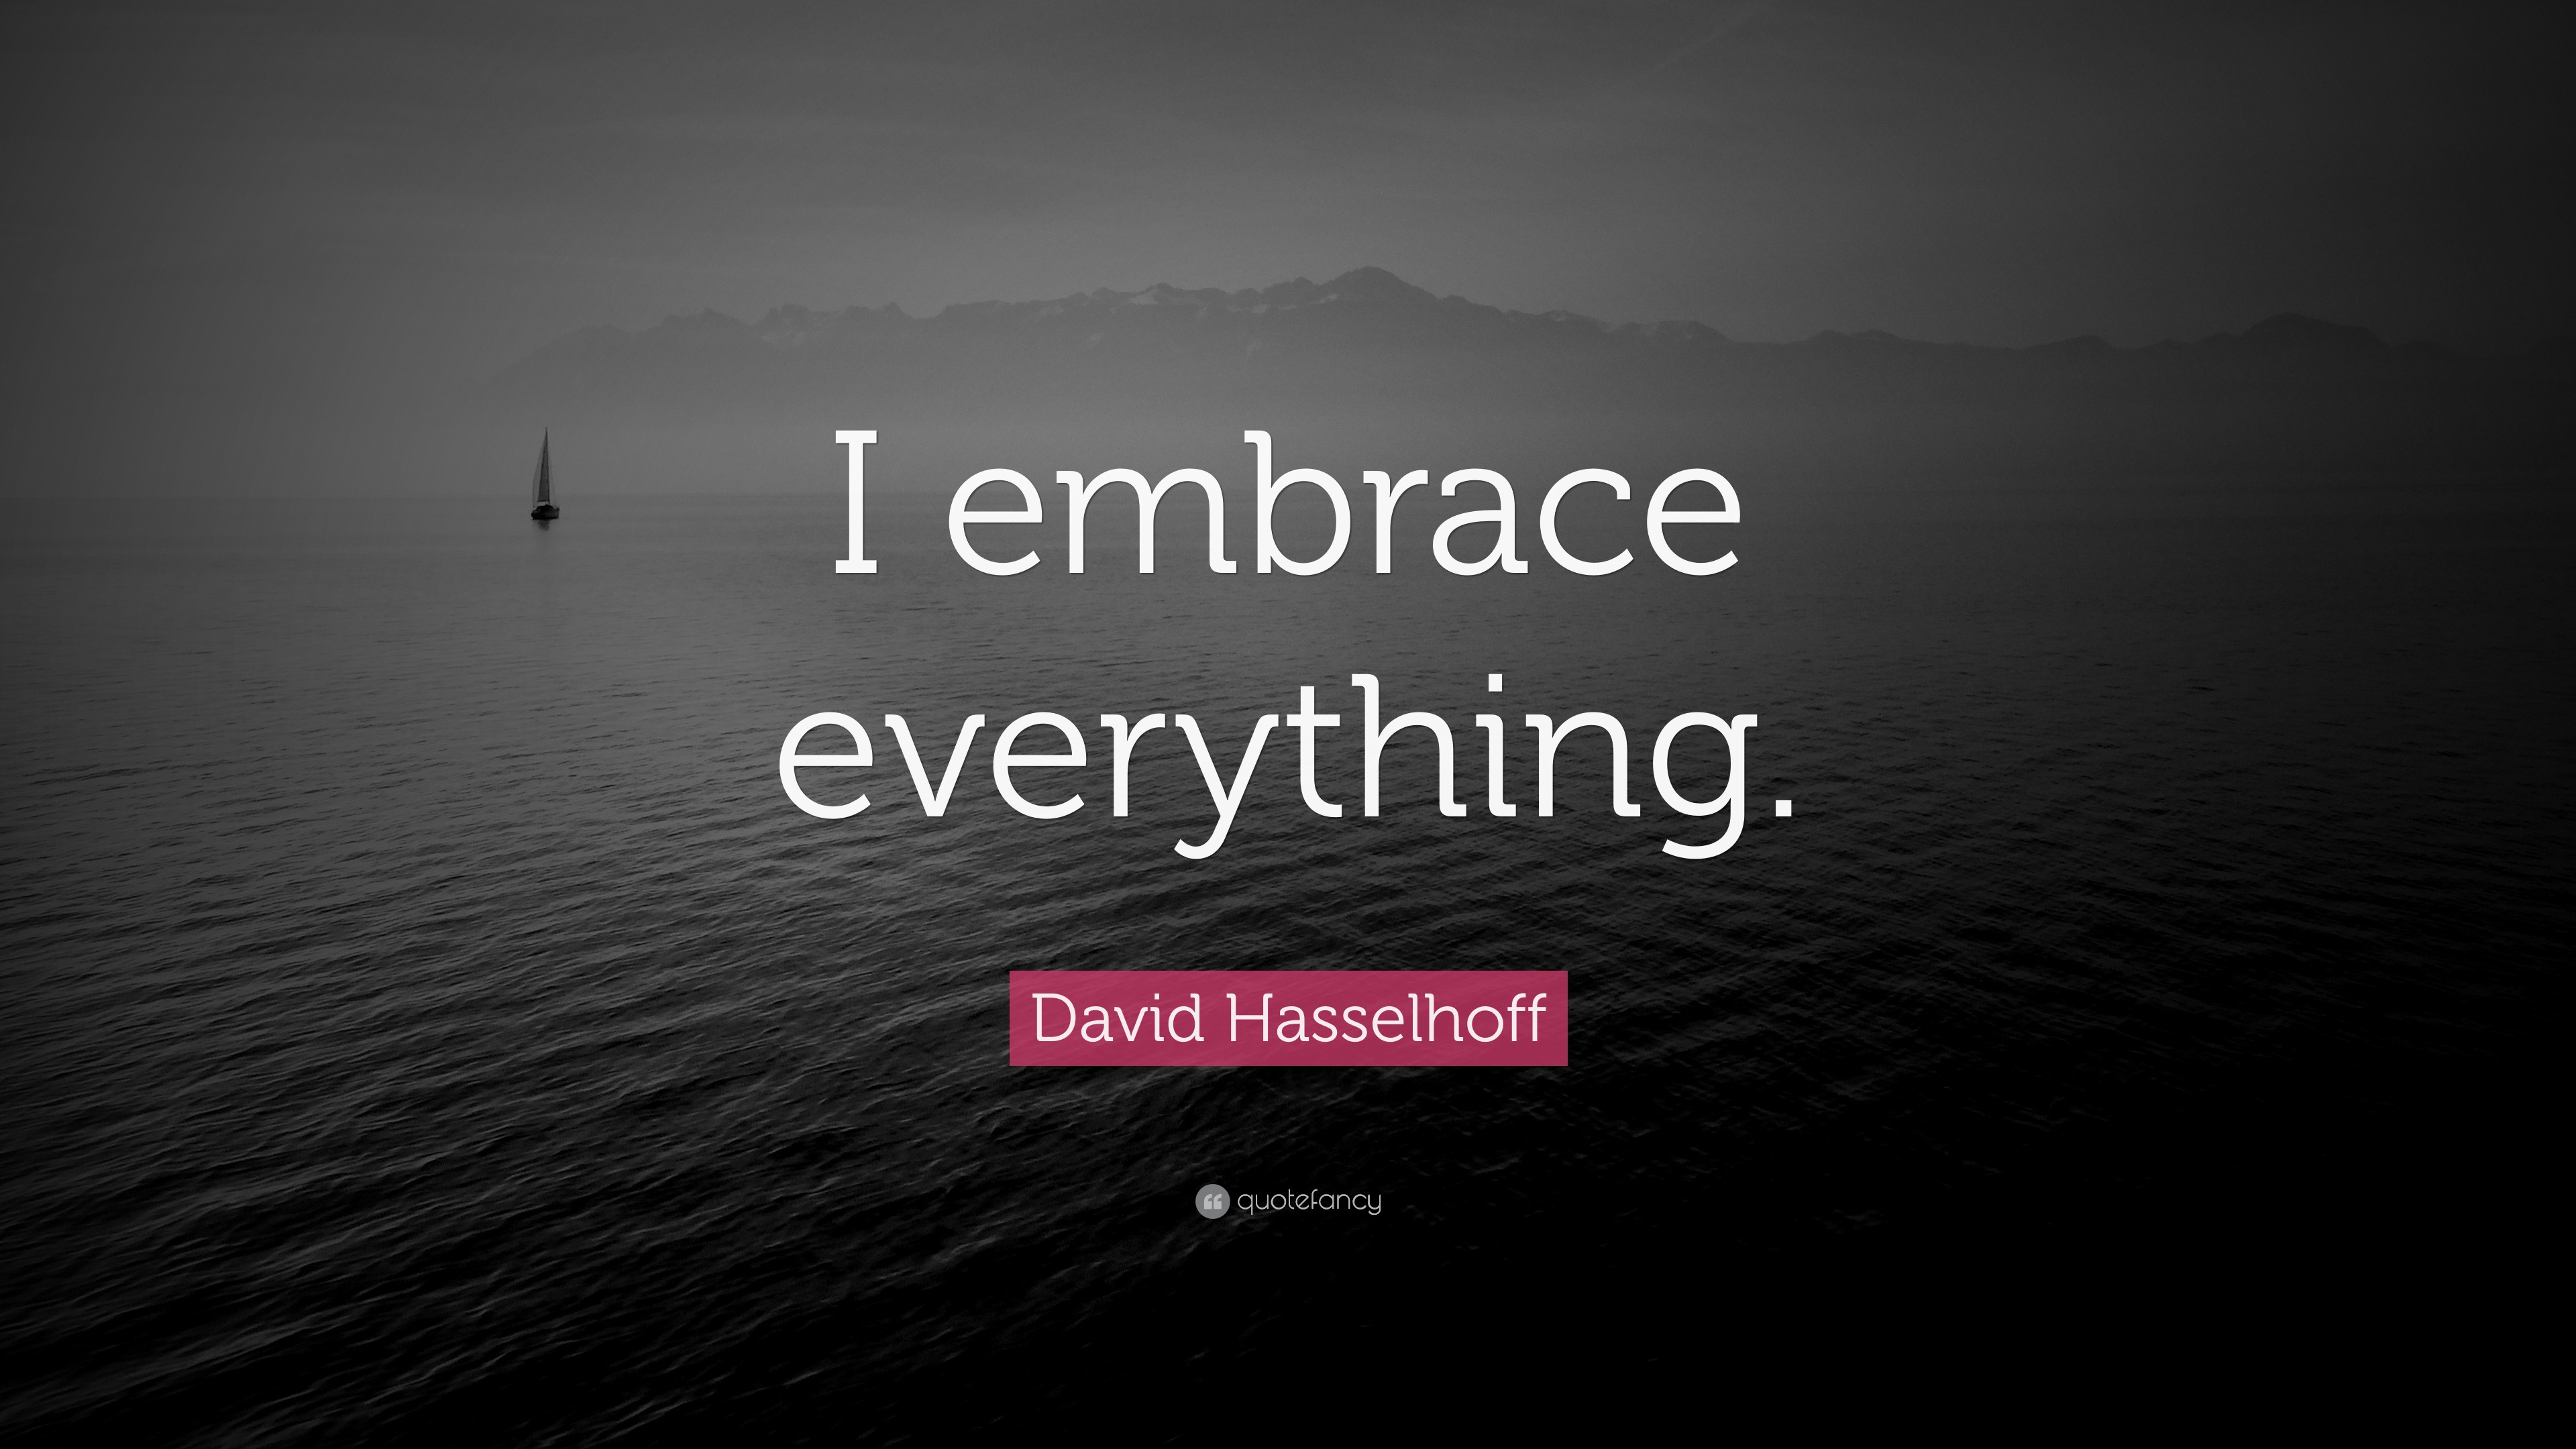 David Hasselhoff  David Hasselhoff Wallpaper 31032906  Fanpop